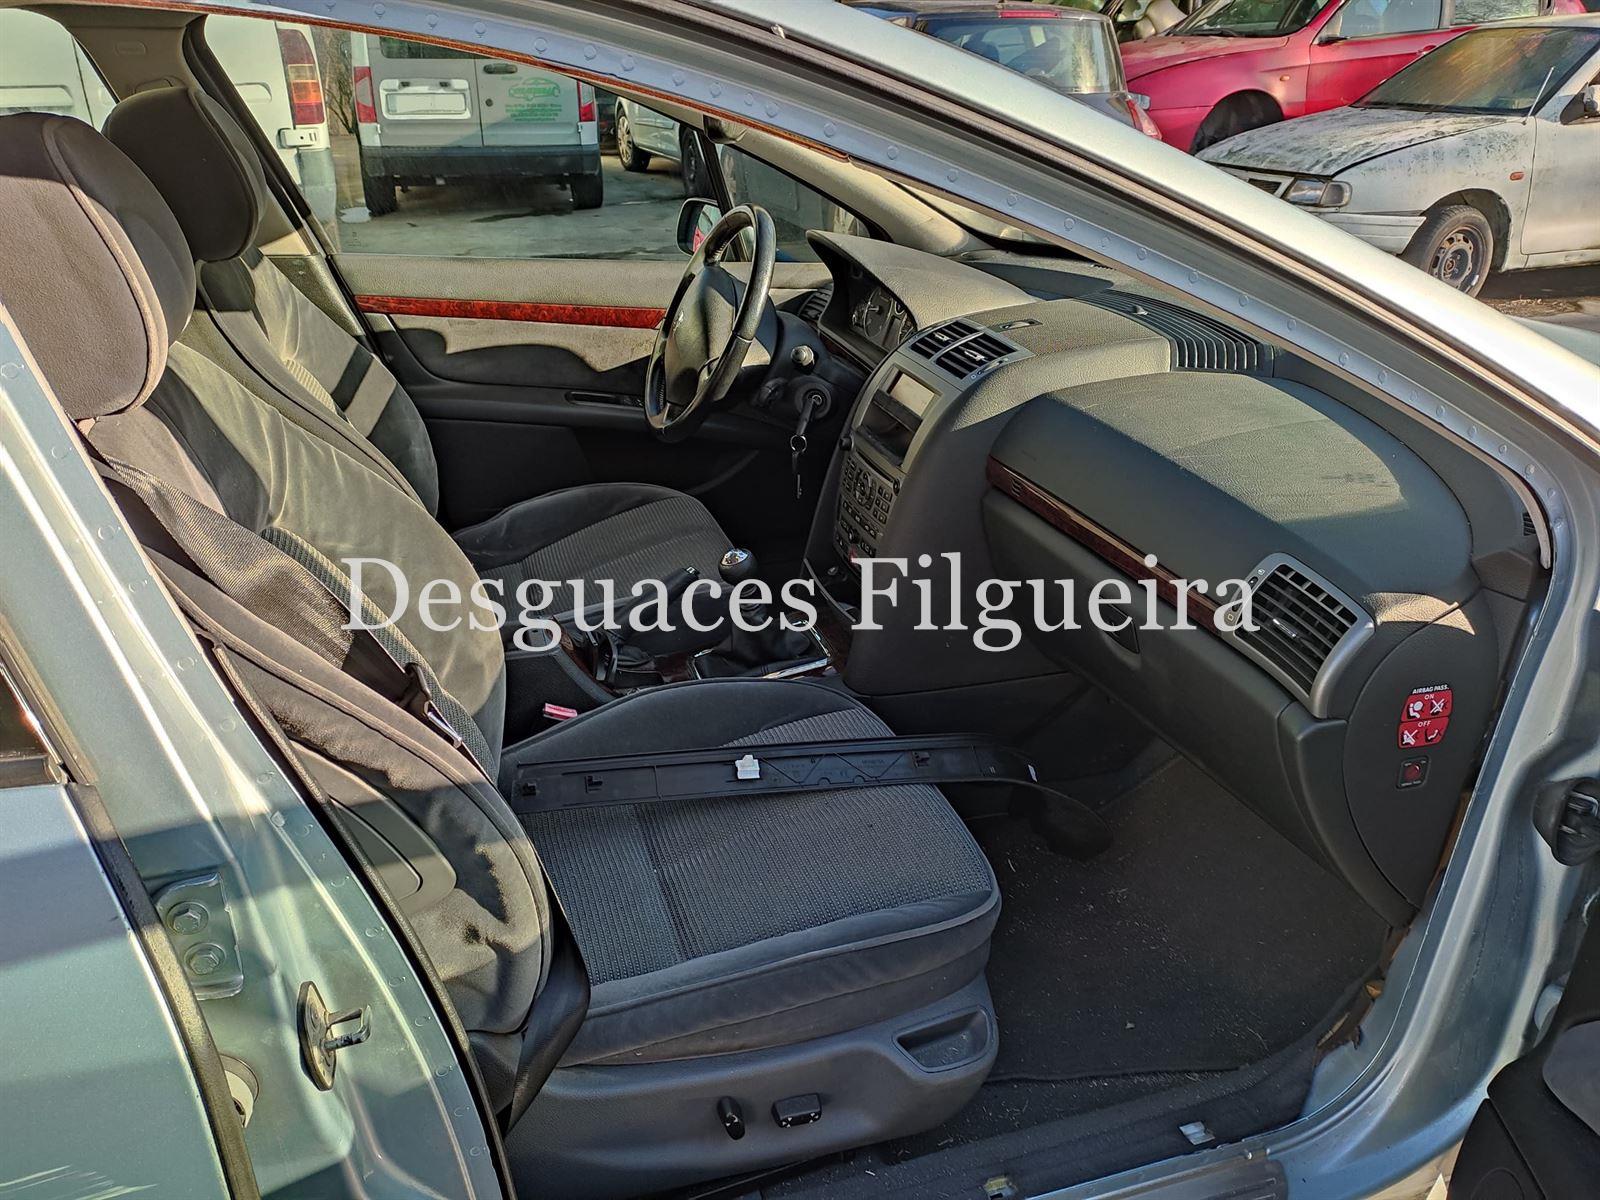 Despiece Peugeot 407 2.0 HDI RHR - Imagen 7